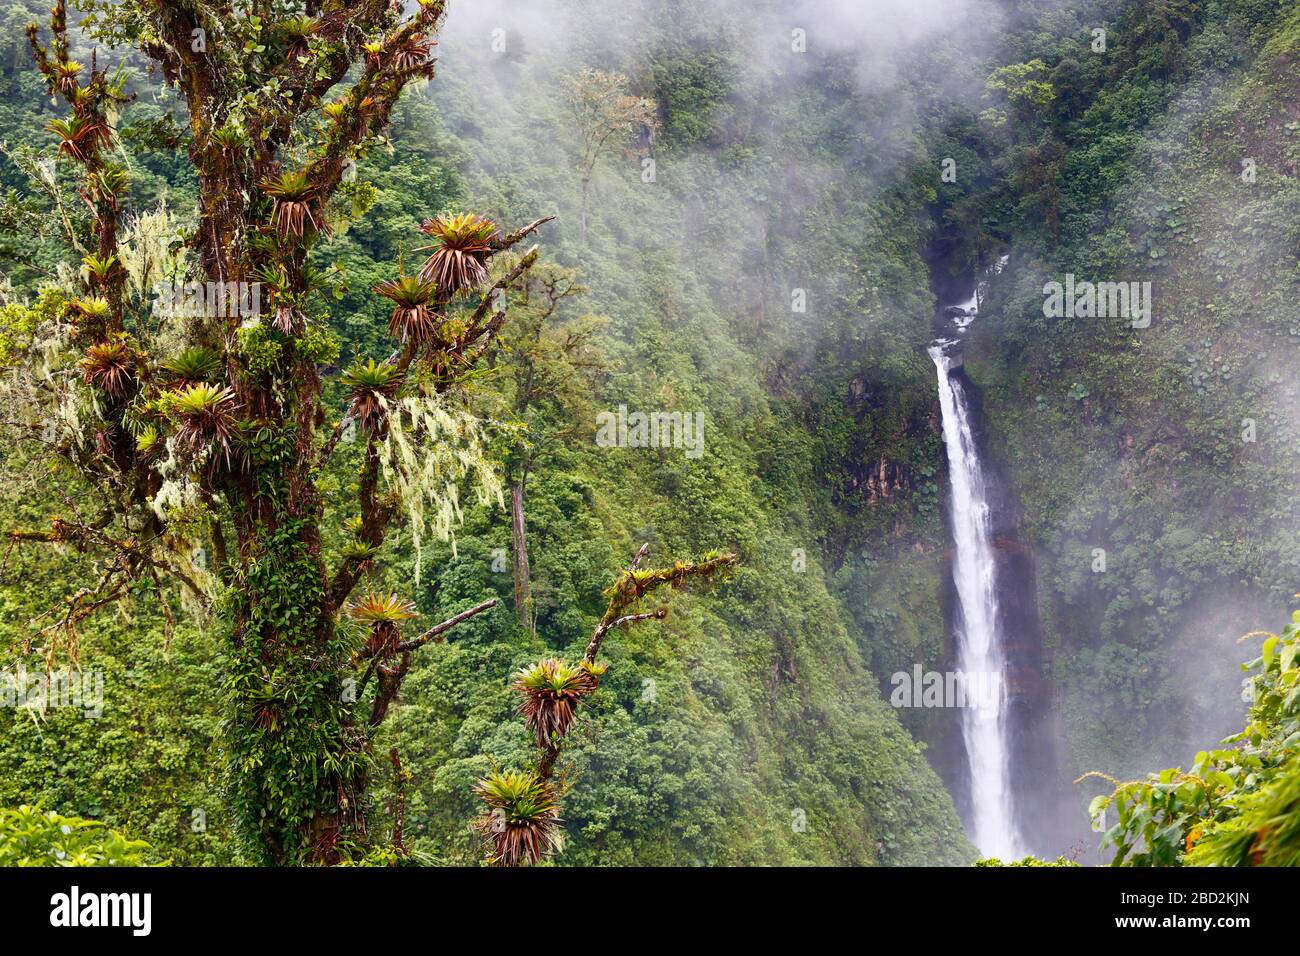 Un gros plan d'une cascade dans la forêt nuageuse du Costa Rica, avec un arbre mort couvert de broméliades au premier plan. Banque D'Images